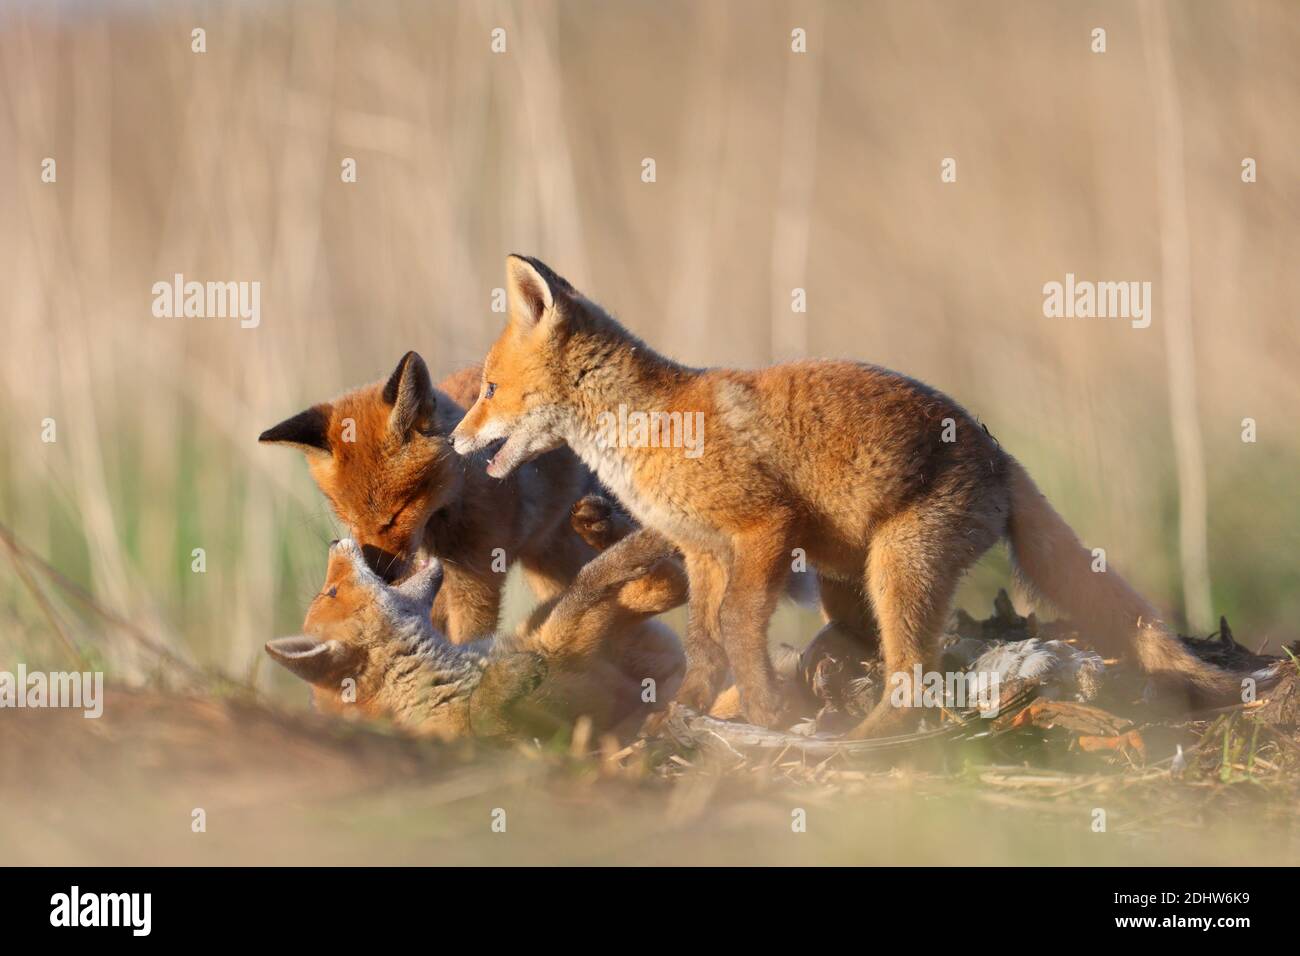 Les petits de renard roux (Vulpes vulpes) jouent à la lutte autour de leur emplacement de den. Estonie, Europe Banque D'Images